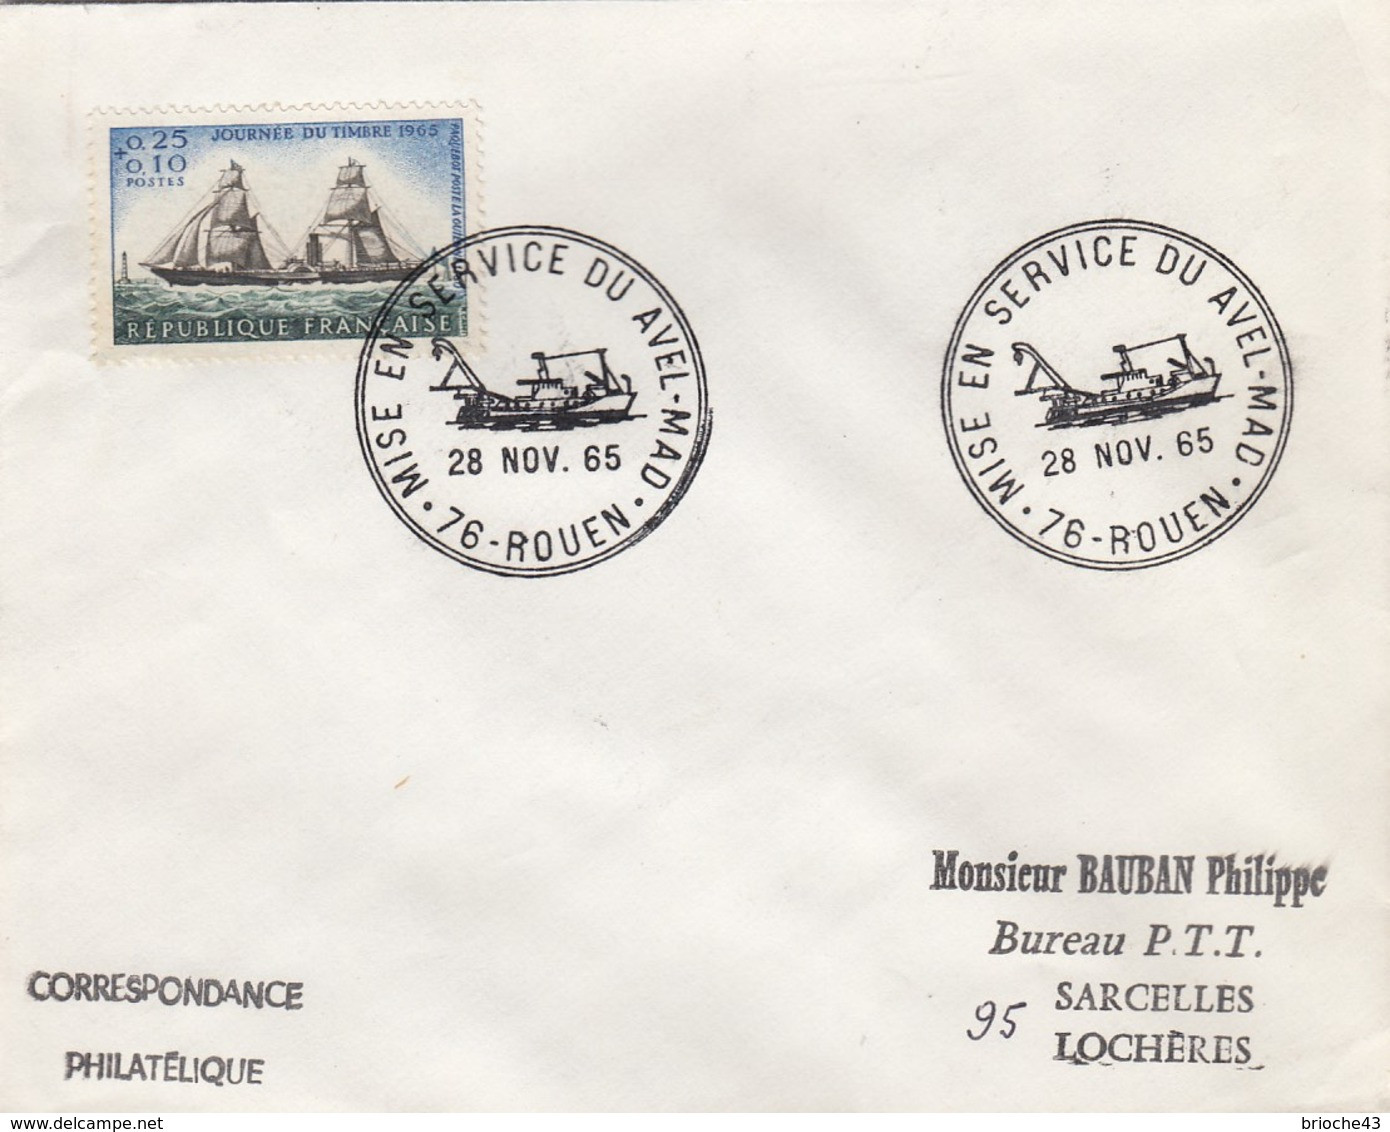 FRANCE - LETTRE JOURNEE TIMBRE 1965   - CACHET ROND MISE EN SERVICE DU AVEL-MAD 28.11.65 ROUEN 76 + VERSO  / 6907 - Covers & Documents